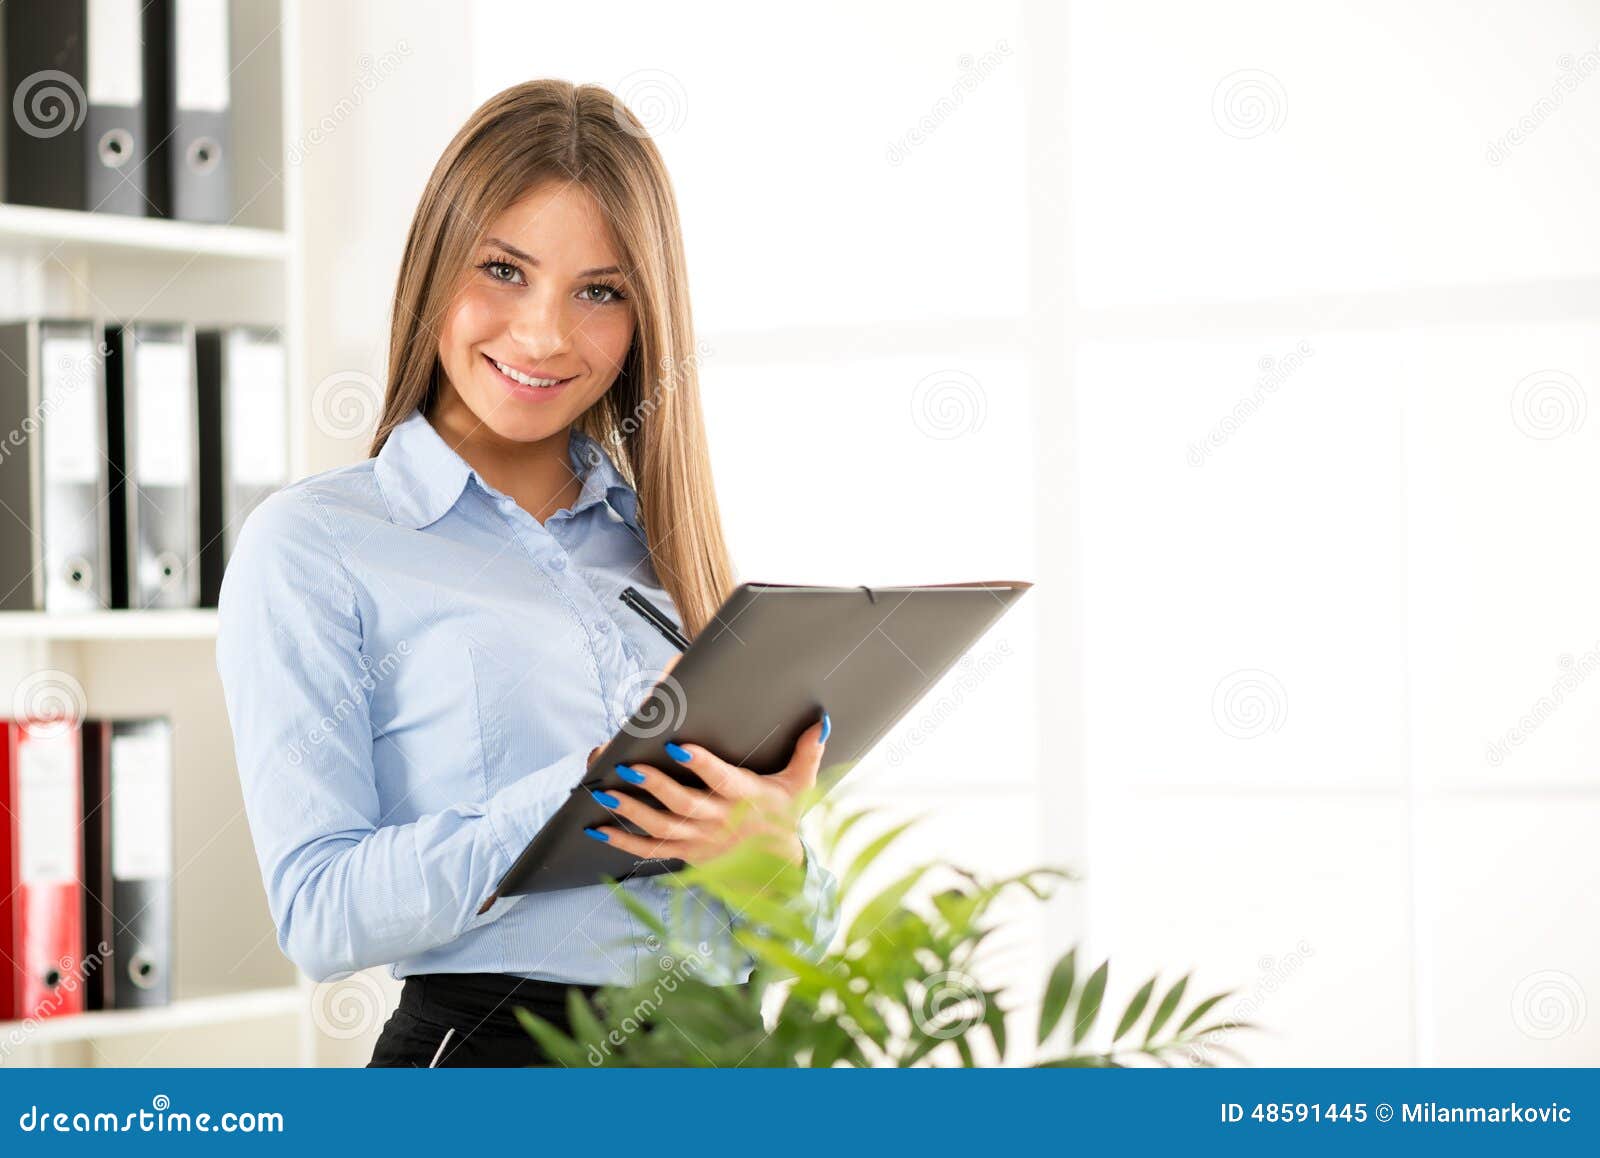 Студентка коммерсантка и просто красавица читать. Девушка с папкой в руках. Женщина с папкой в руках в офисе. Секретарь с документами. Красивая девушка с документами.